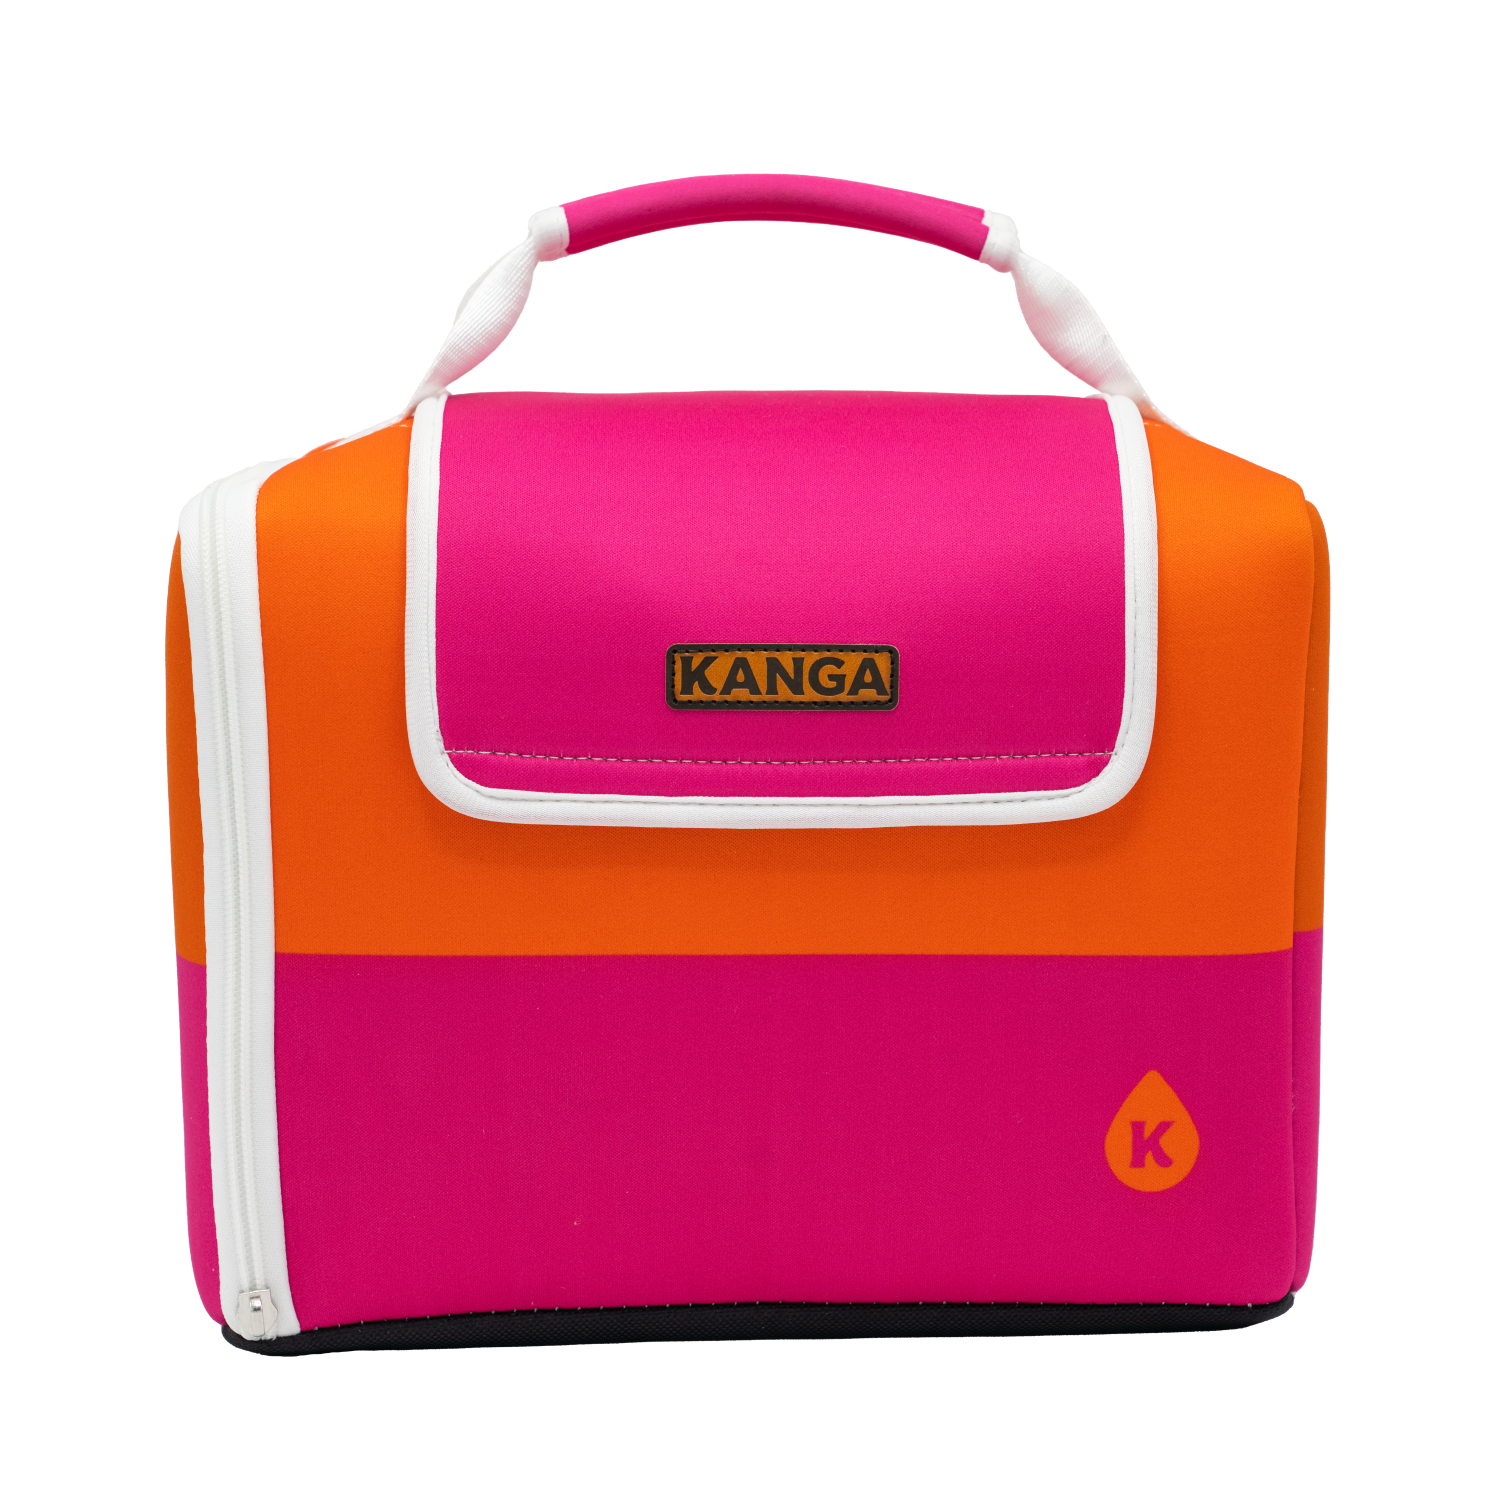 Kanga 12-Pack Kase Mate Cooler Malibu